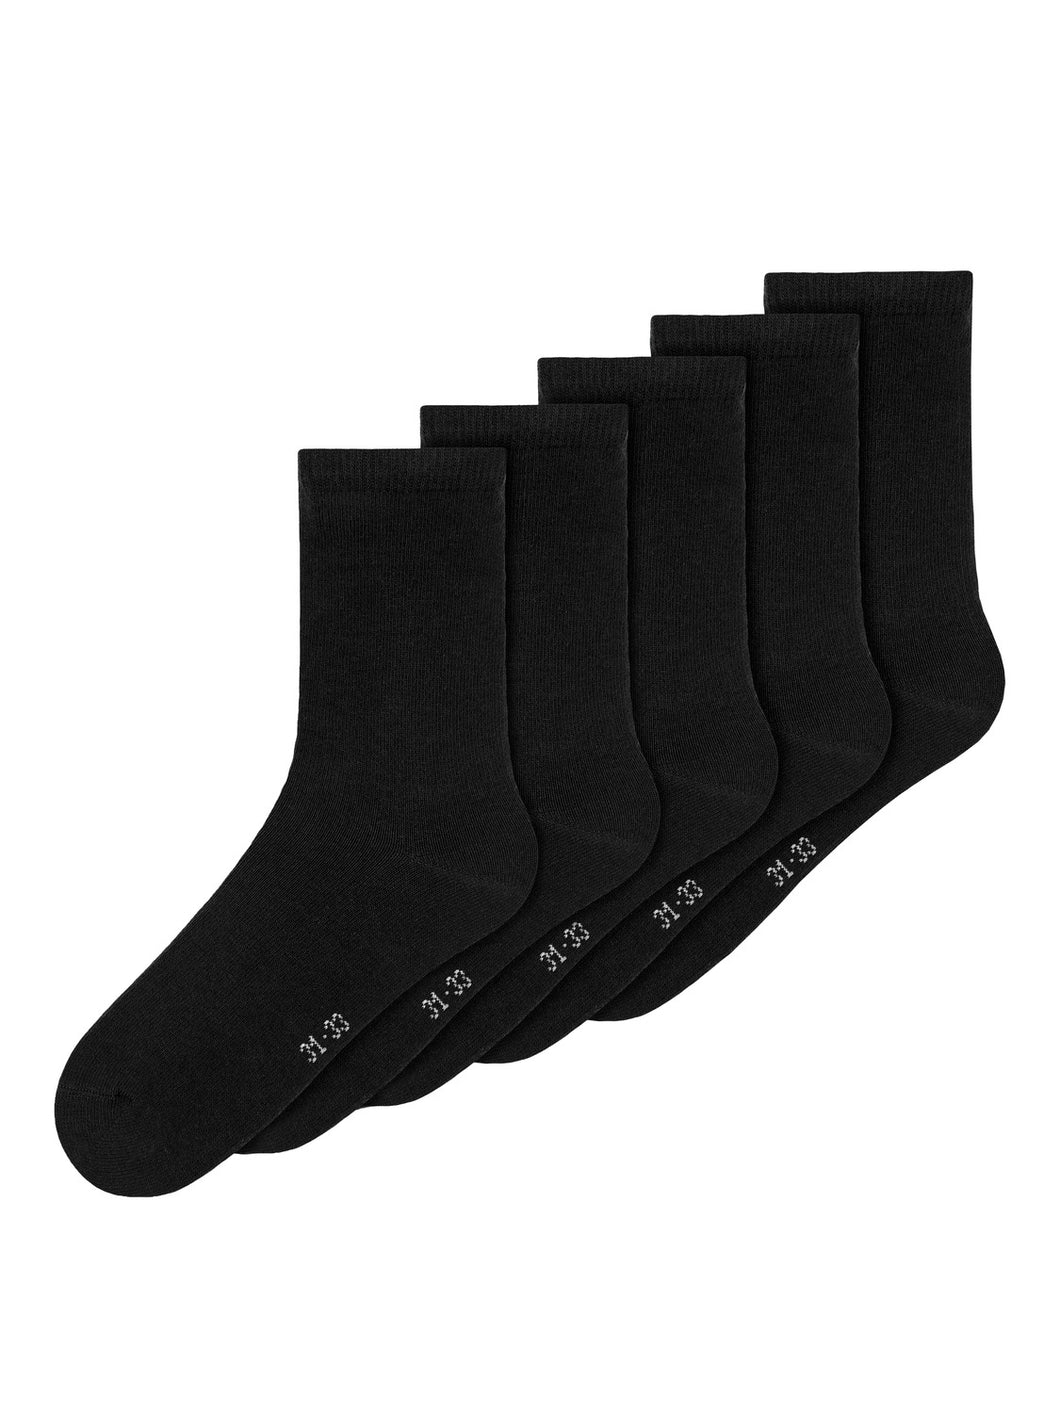 NKNSOCK Socks - Black